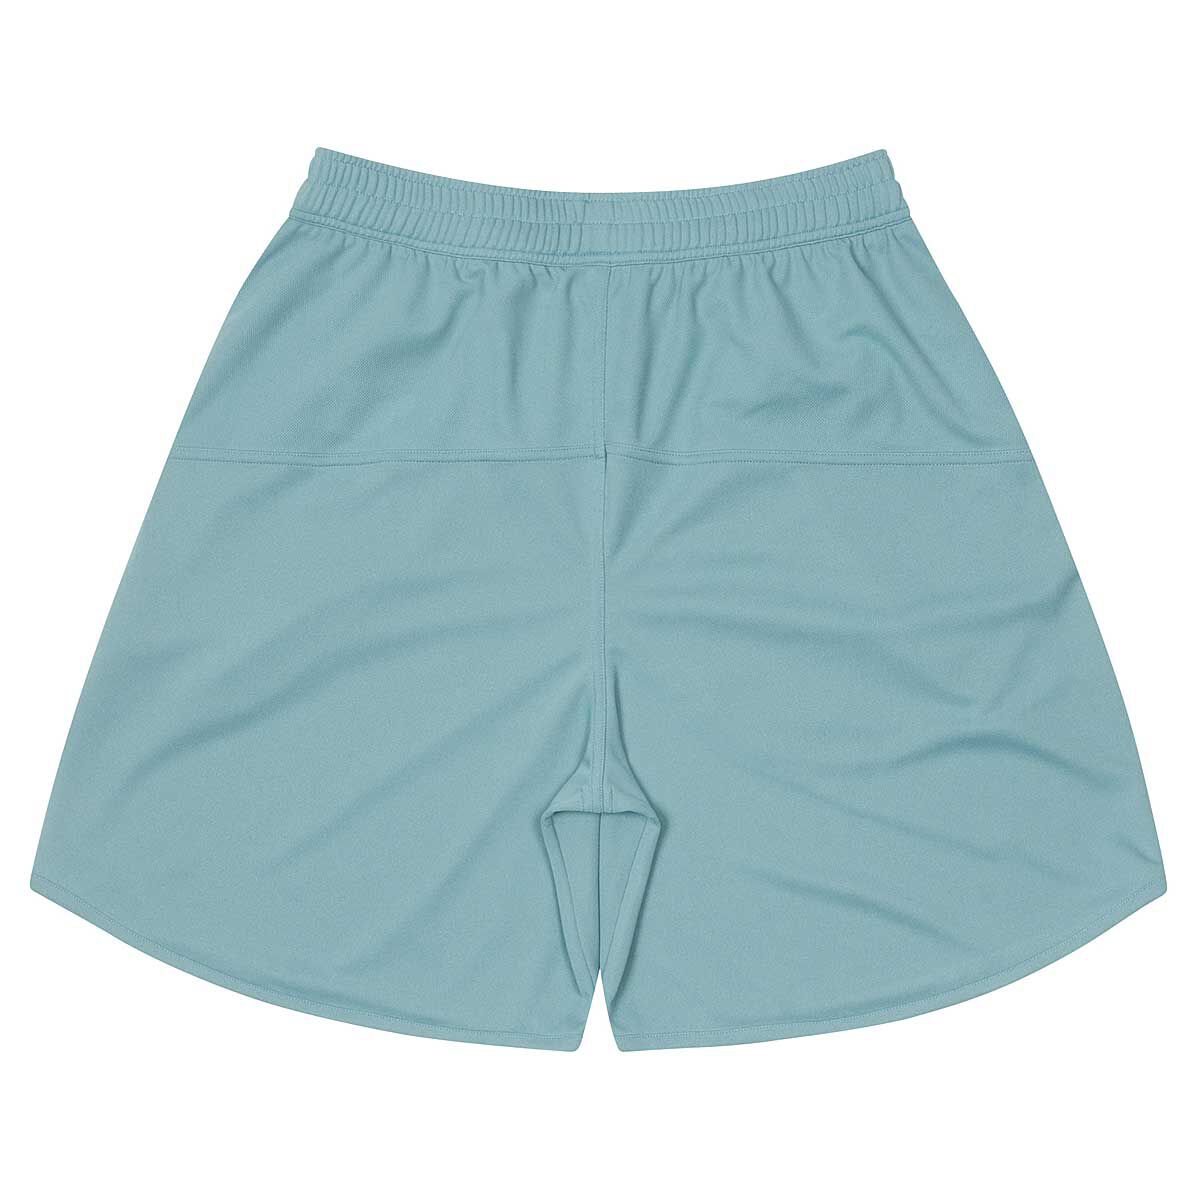 Buy Basic Zip Shorts for EUR 69.90 on KICKZ.com!